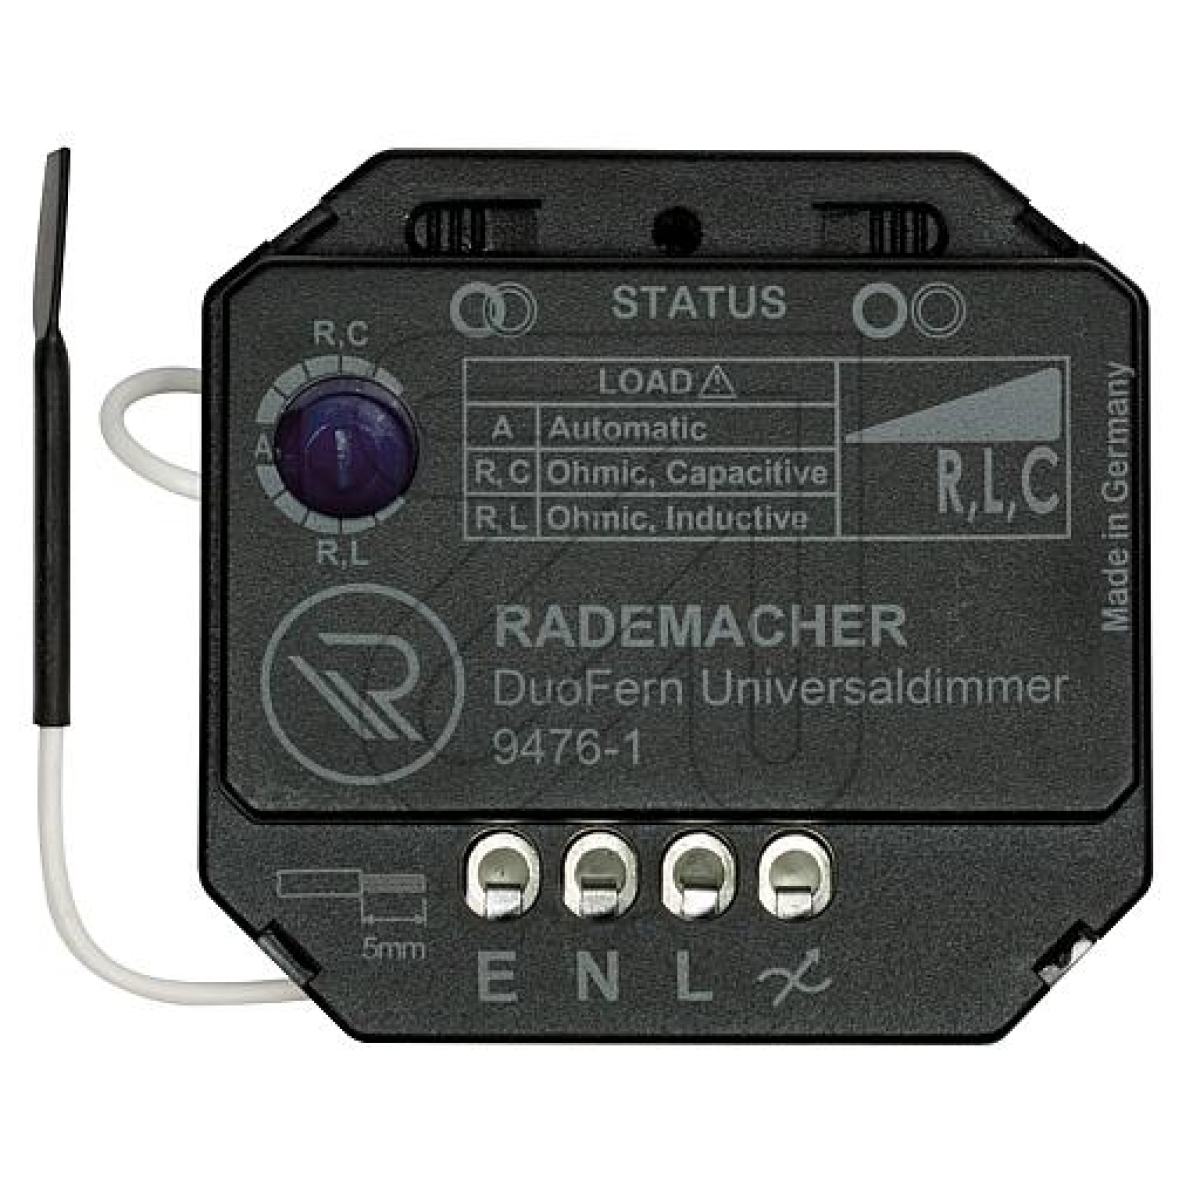 RademacherDuoFern Universaldimmer 35140462 9476-1